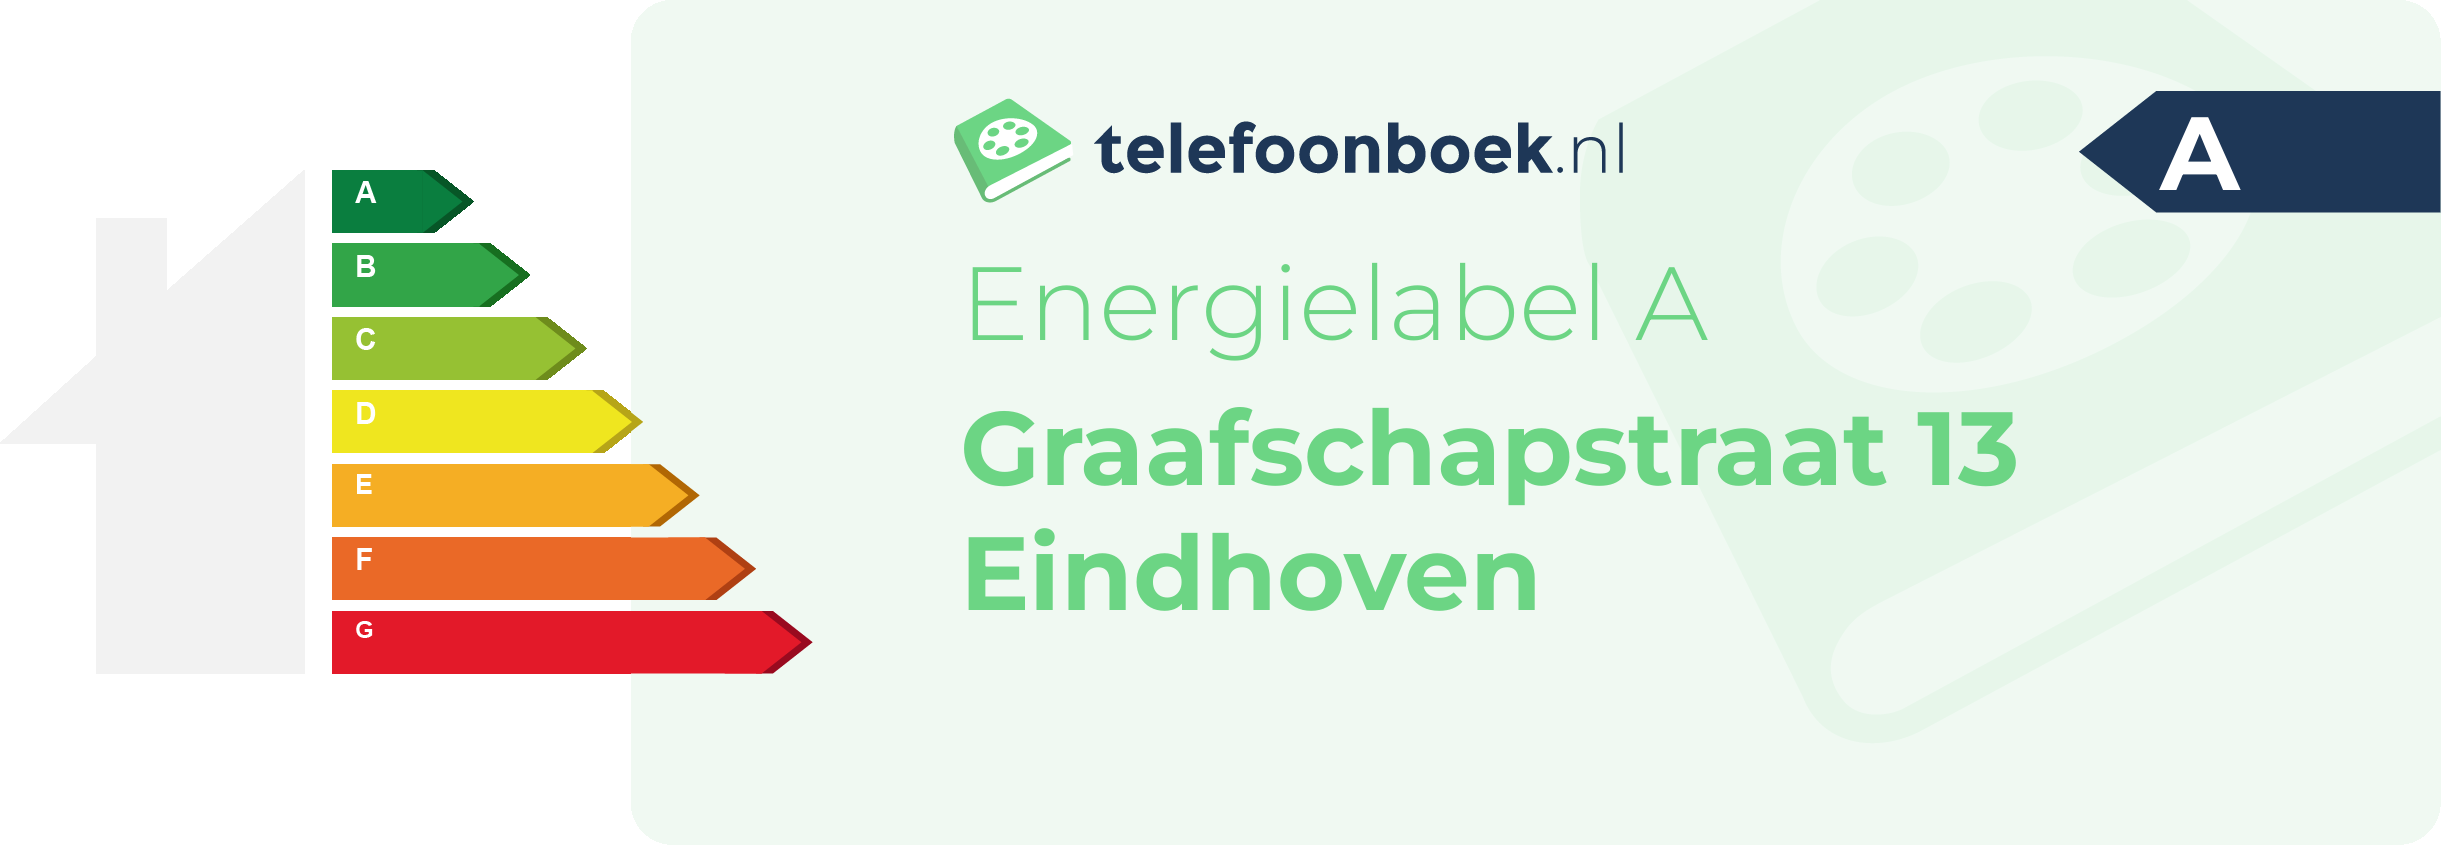 Energielabel Graafschapstraat 13 Eindhoven